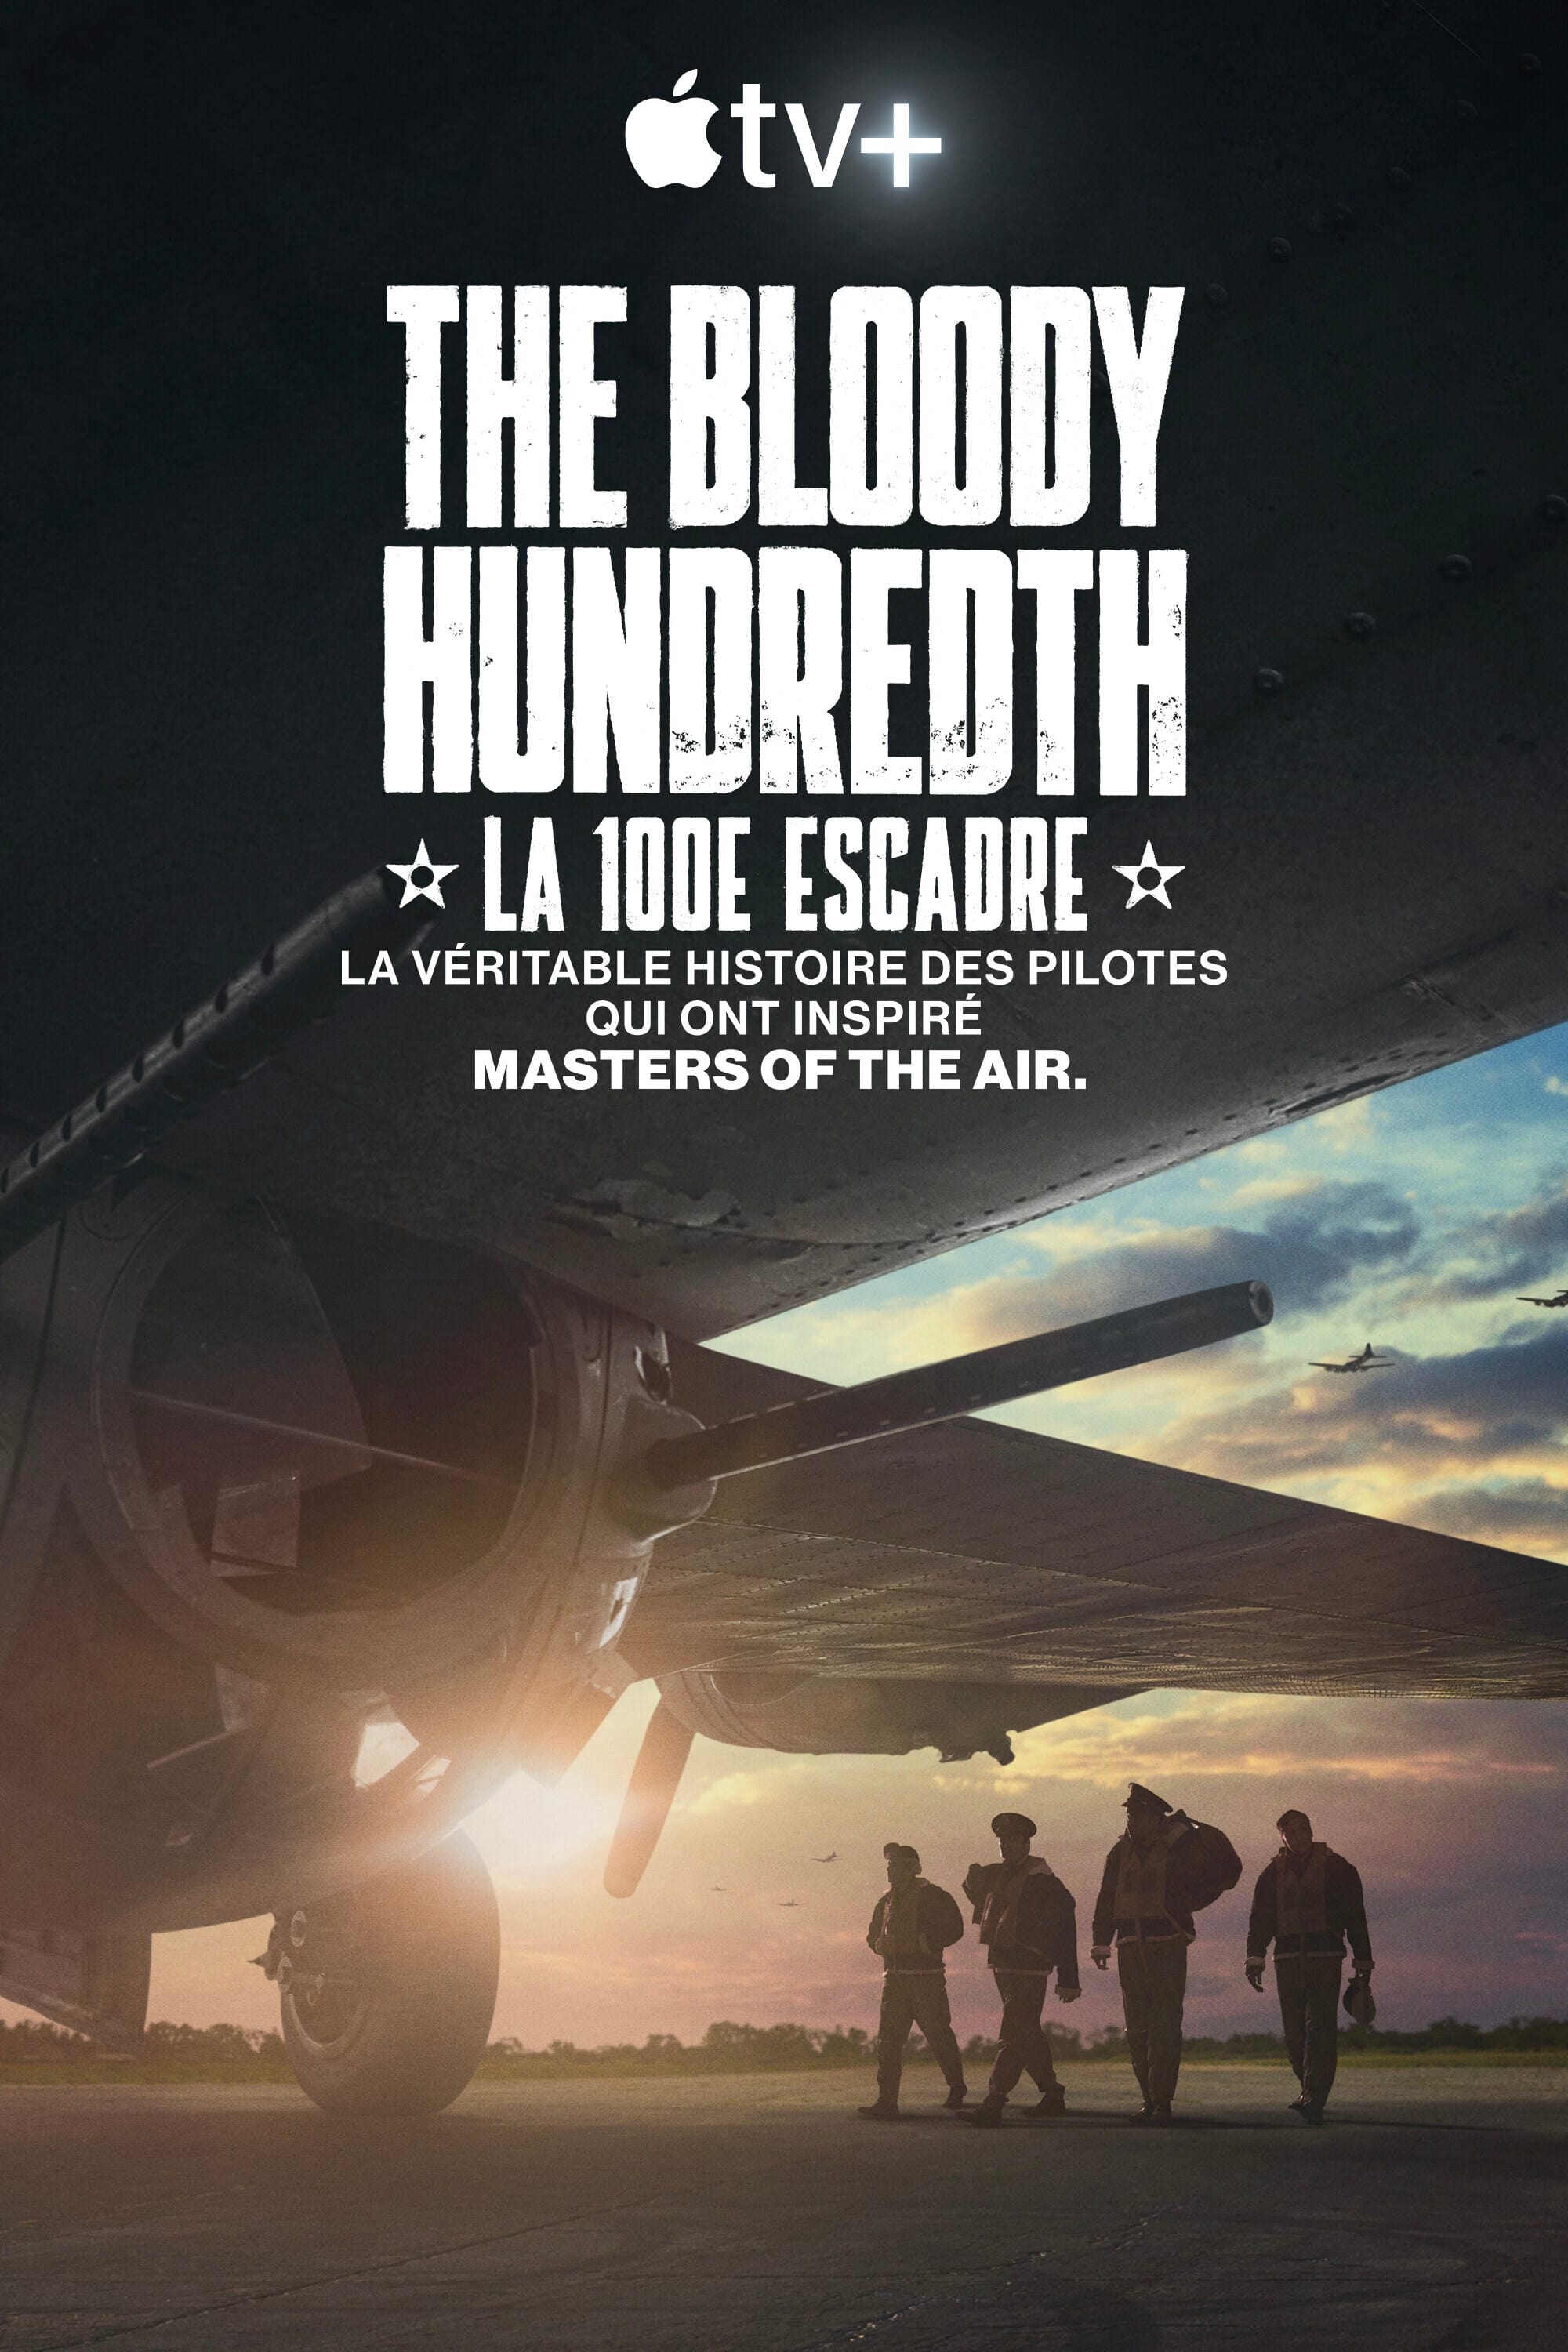 The Bloody Hundredth : la 100e escadre